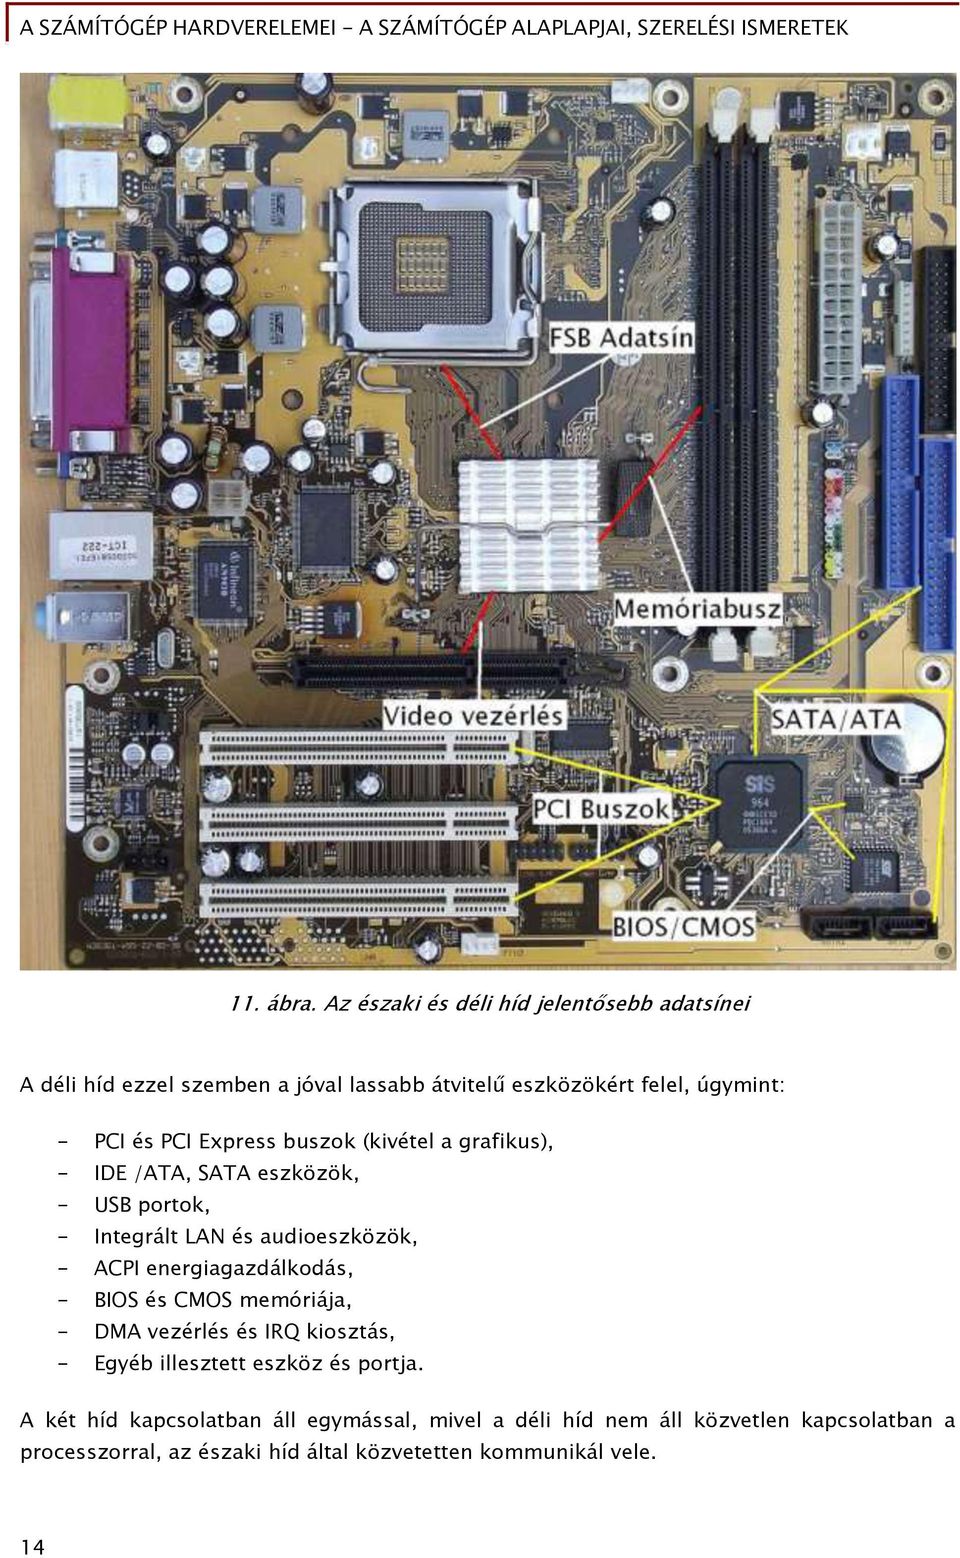 PCI Express buszok (kivétel a őraőikus), - IDE /ATA, SATA eszközök, - USB portok, - Inteőrált LAN és audioeszközök, - ACPI